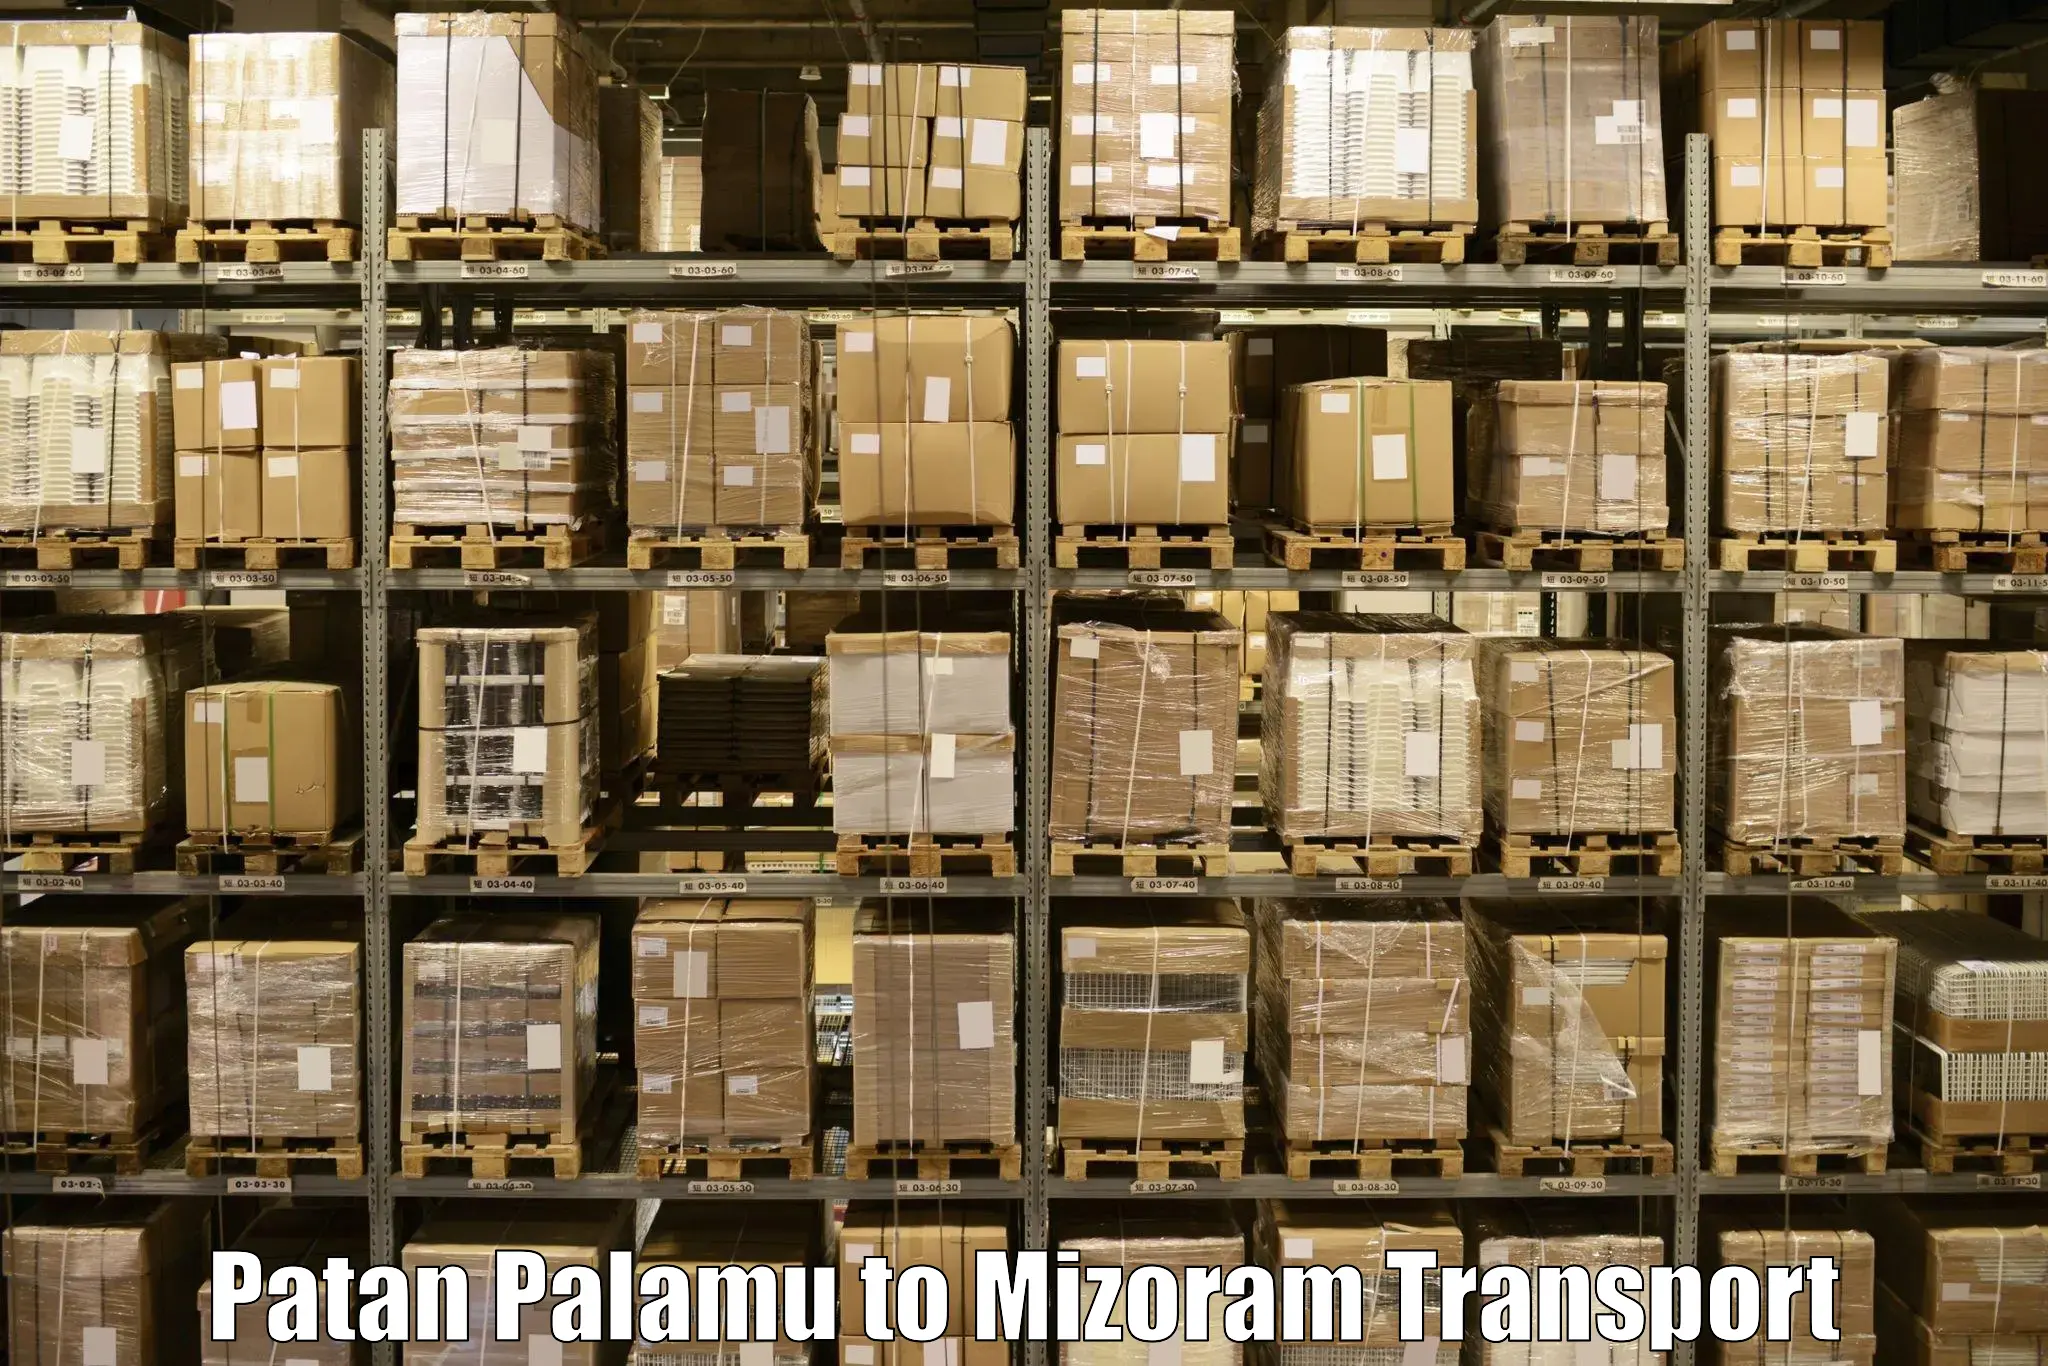 Pick up transport service Patan Palamu to Aizawl